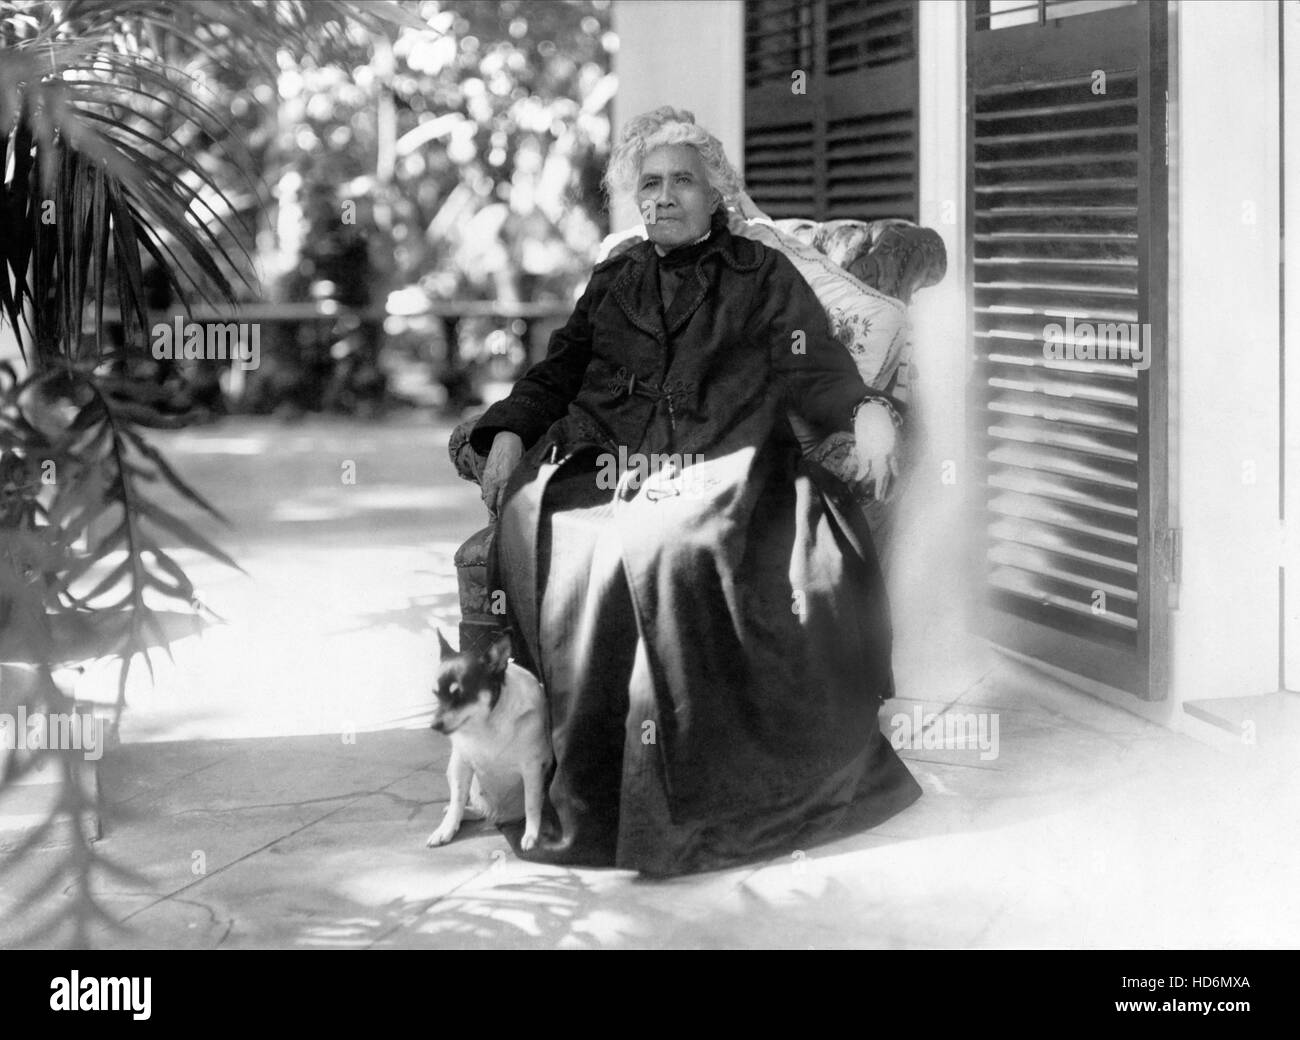 Regina Liliuokalani (1838-1917) è stato il regno delle Hawaii regina prima e ultima dominatrice sovrana. Ha regnato dal 1891 fino al 1893 quando la monarchia fu rovesciato. (Foto c1917) Foto Stock